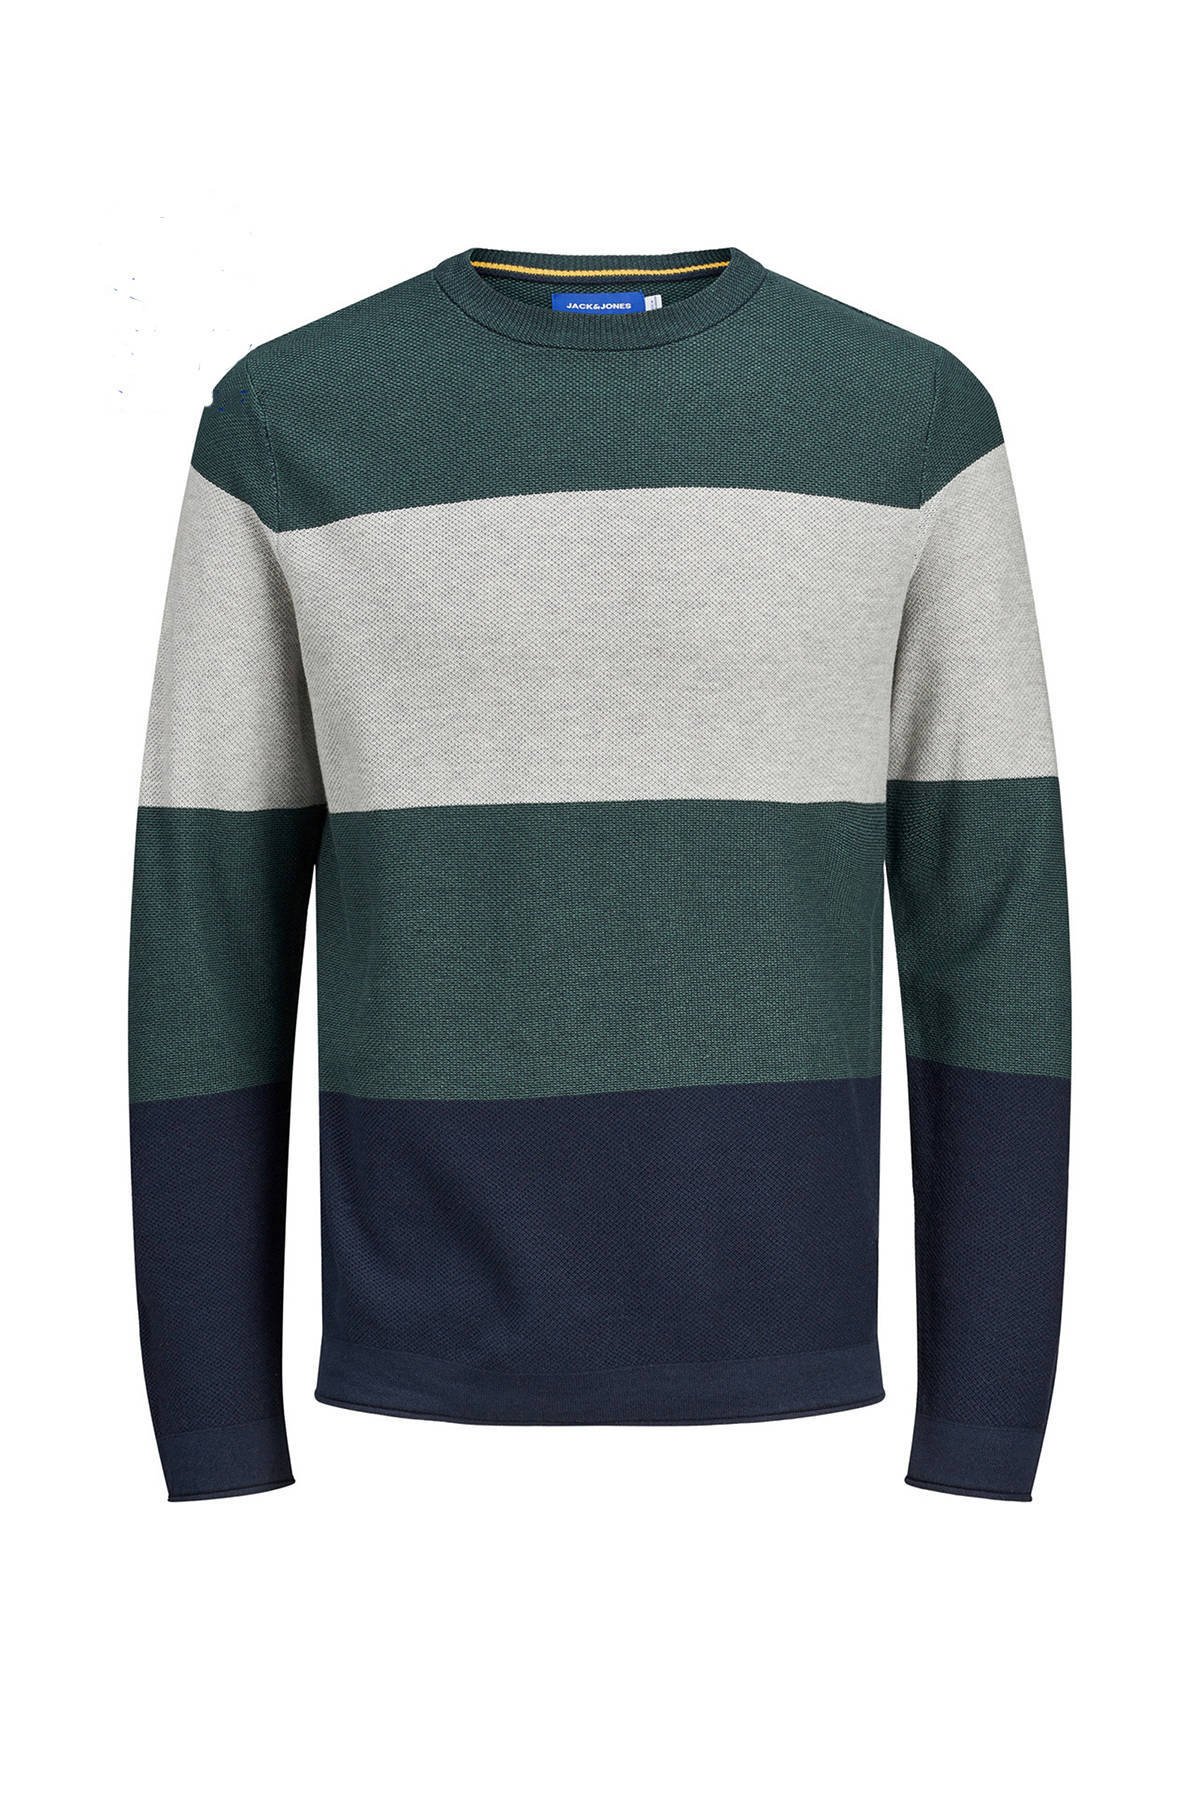 JACK & JONES ORIGINALS trui groen/grijs/donkerblauw online kopen